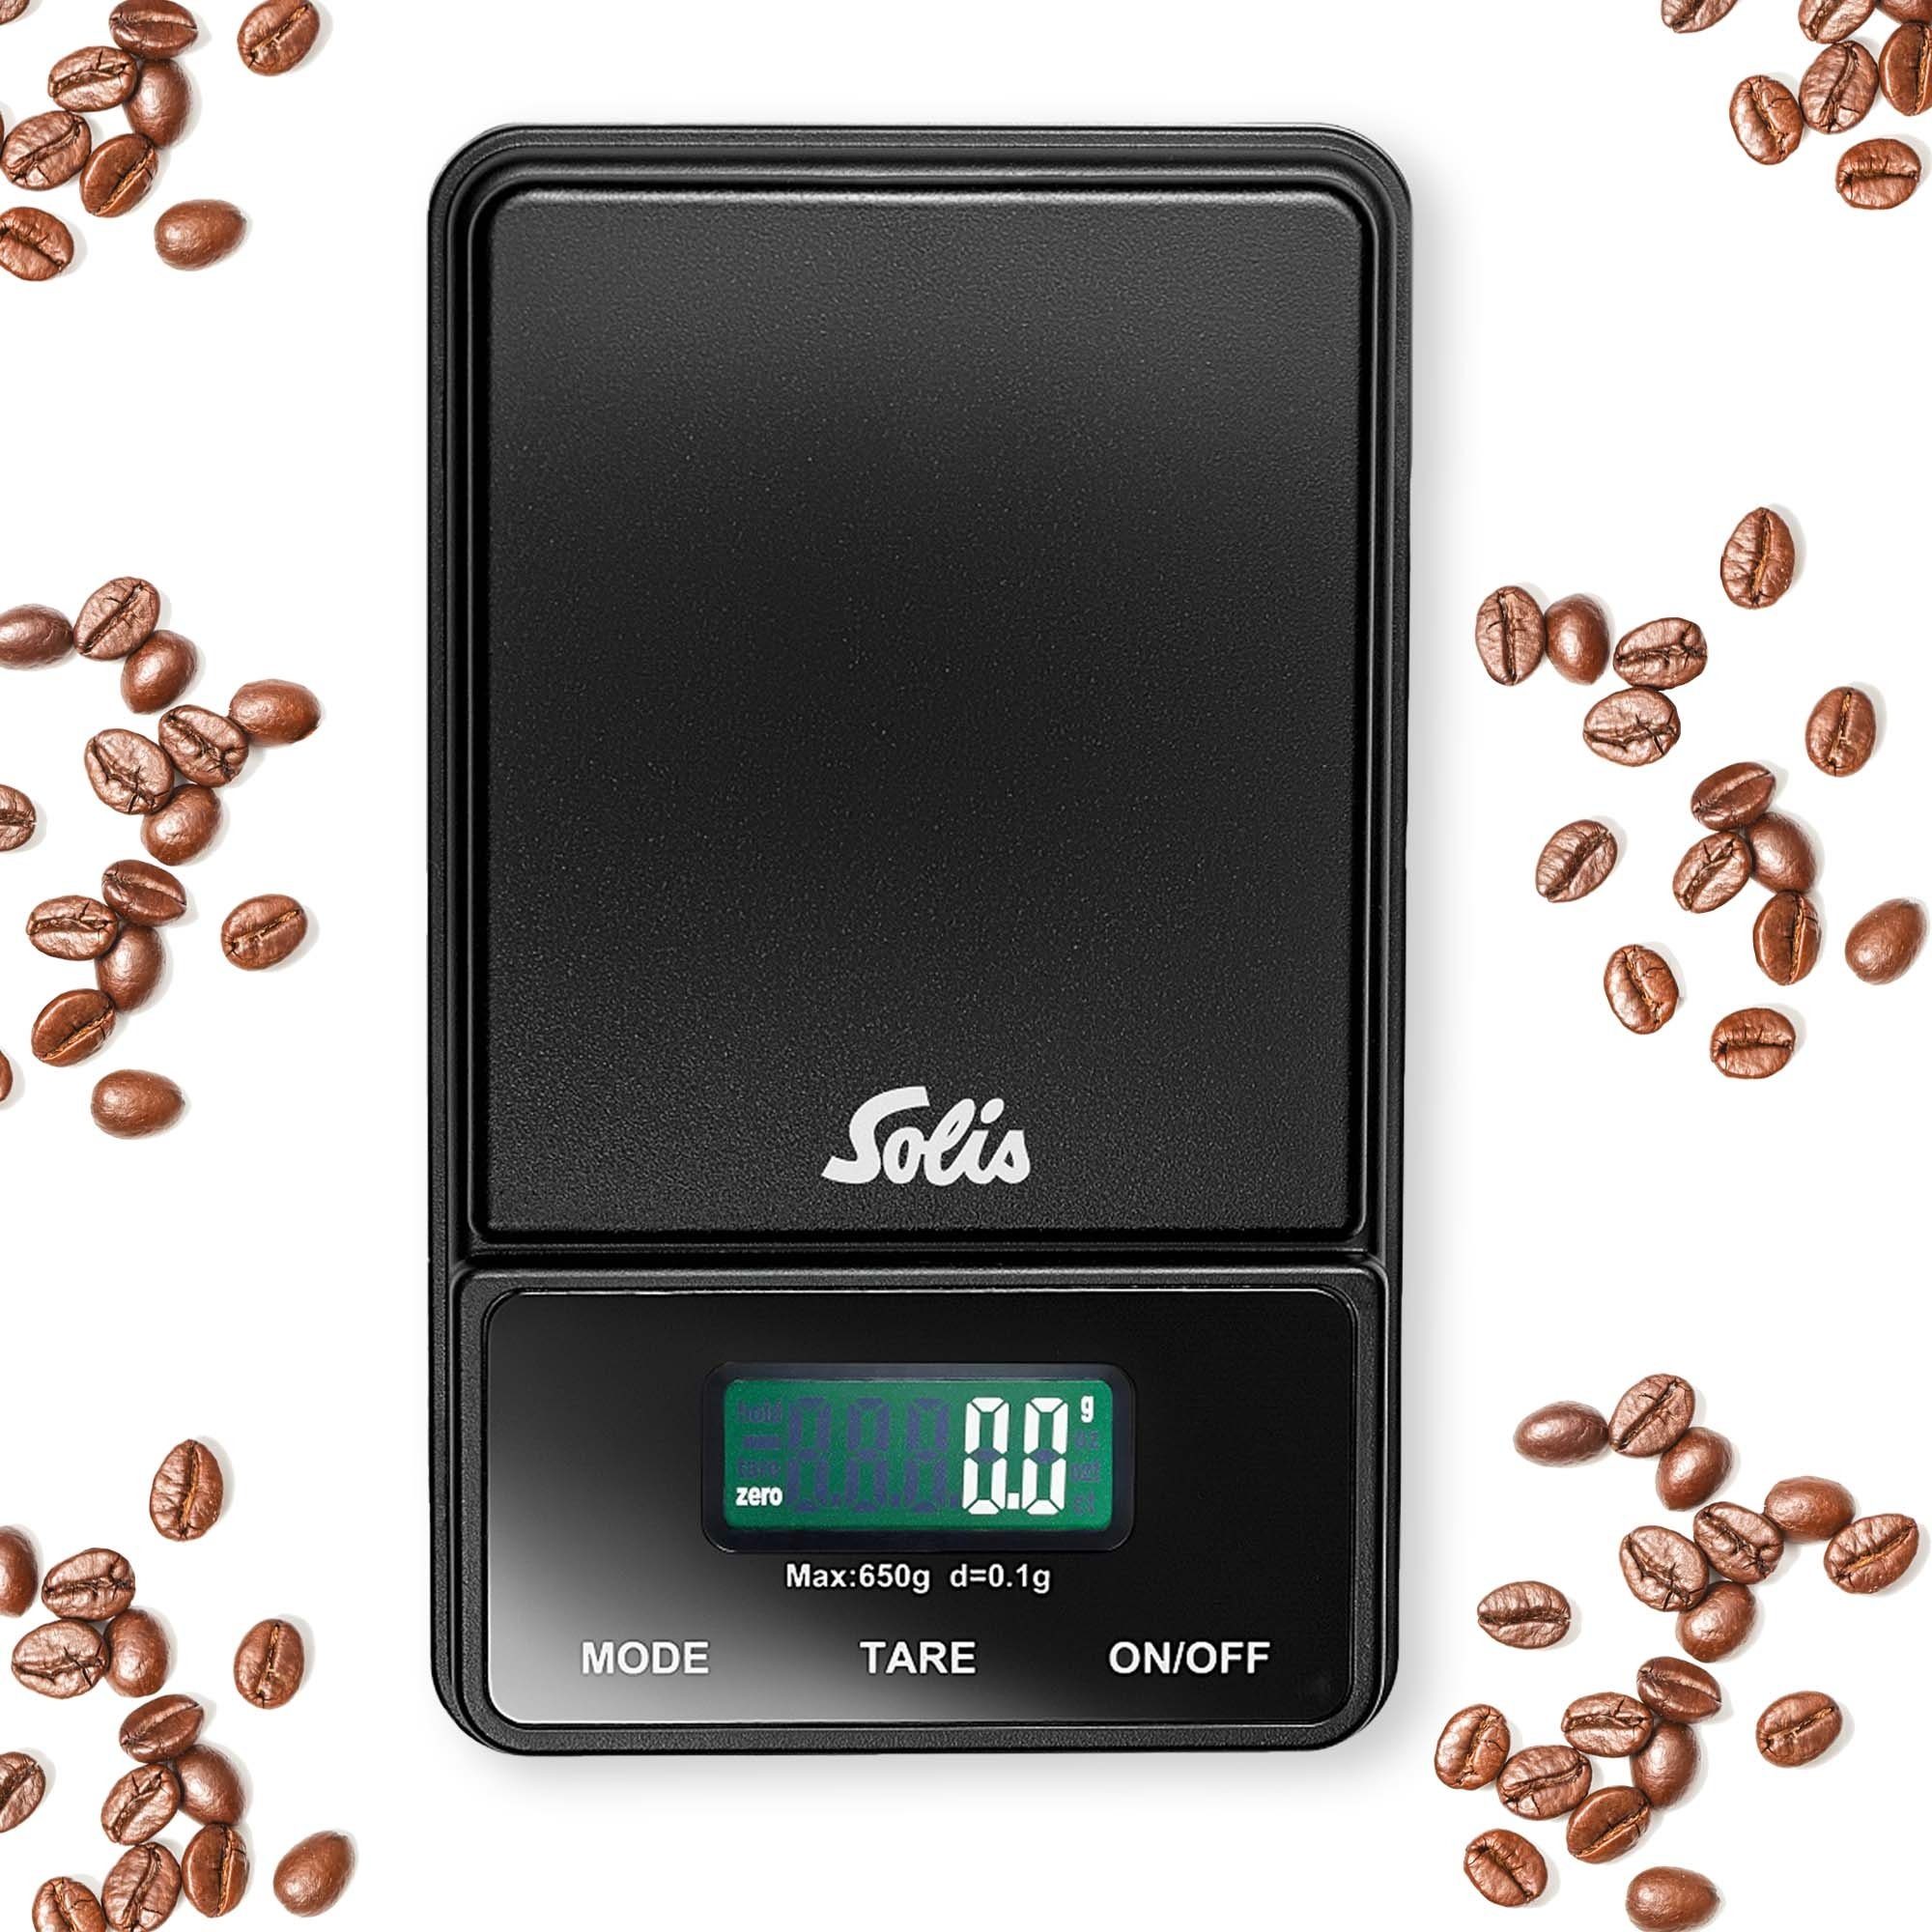 Type 0,1 Coffee 1030, - Gramm, g, Karat, SOLIS OF Display Digital SWITZERLAND LCD Scale Unze, Feinwaage Einheiten: 650